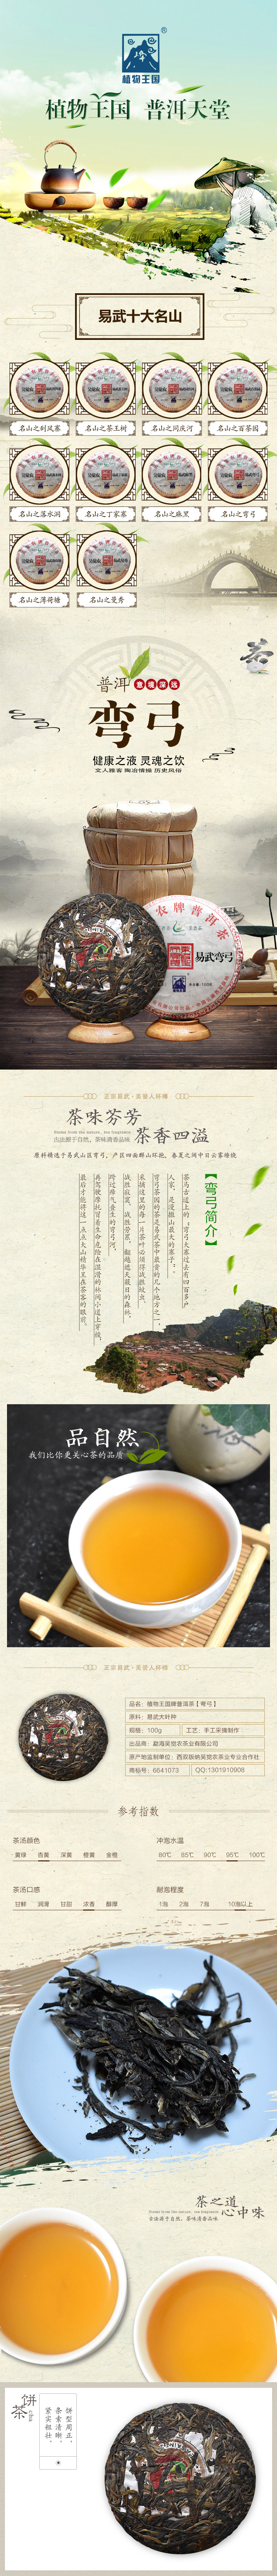 吴觉农 新品茶叶(图1)